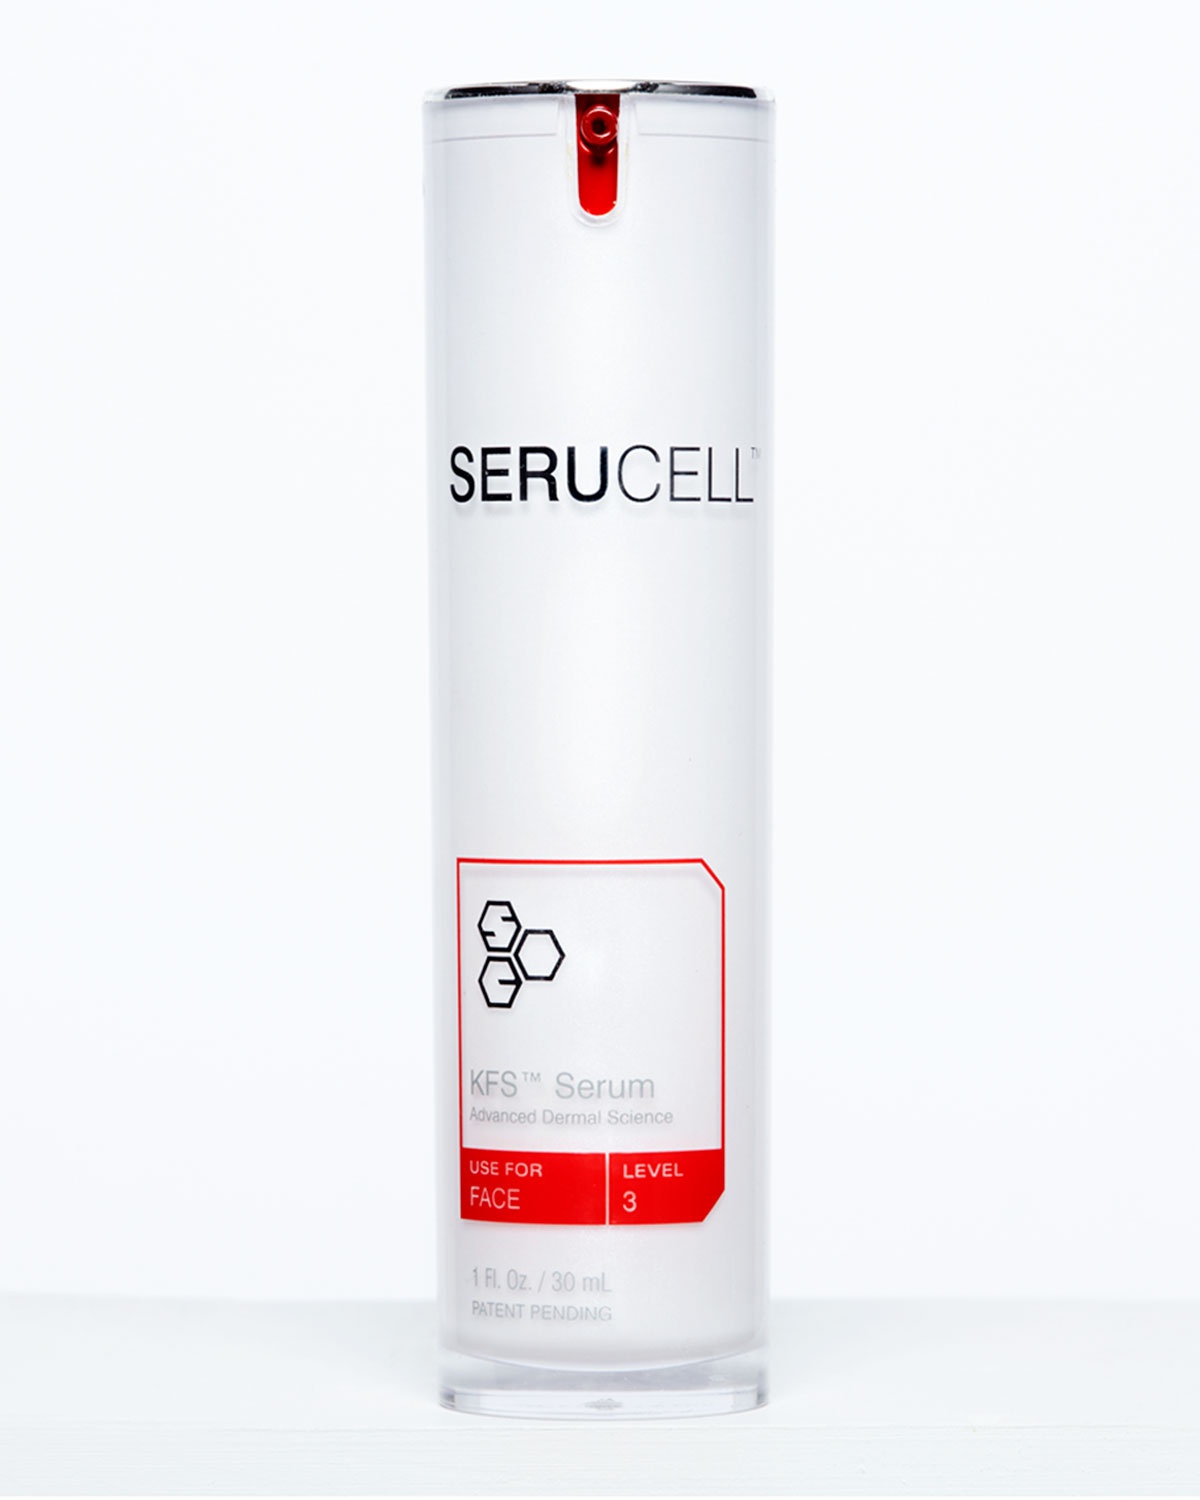 Serucell Kfs® Cellular Protein Complex Serum